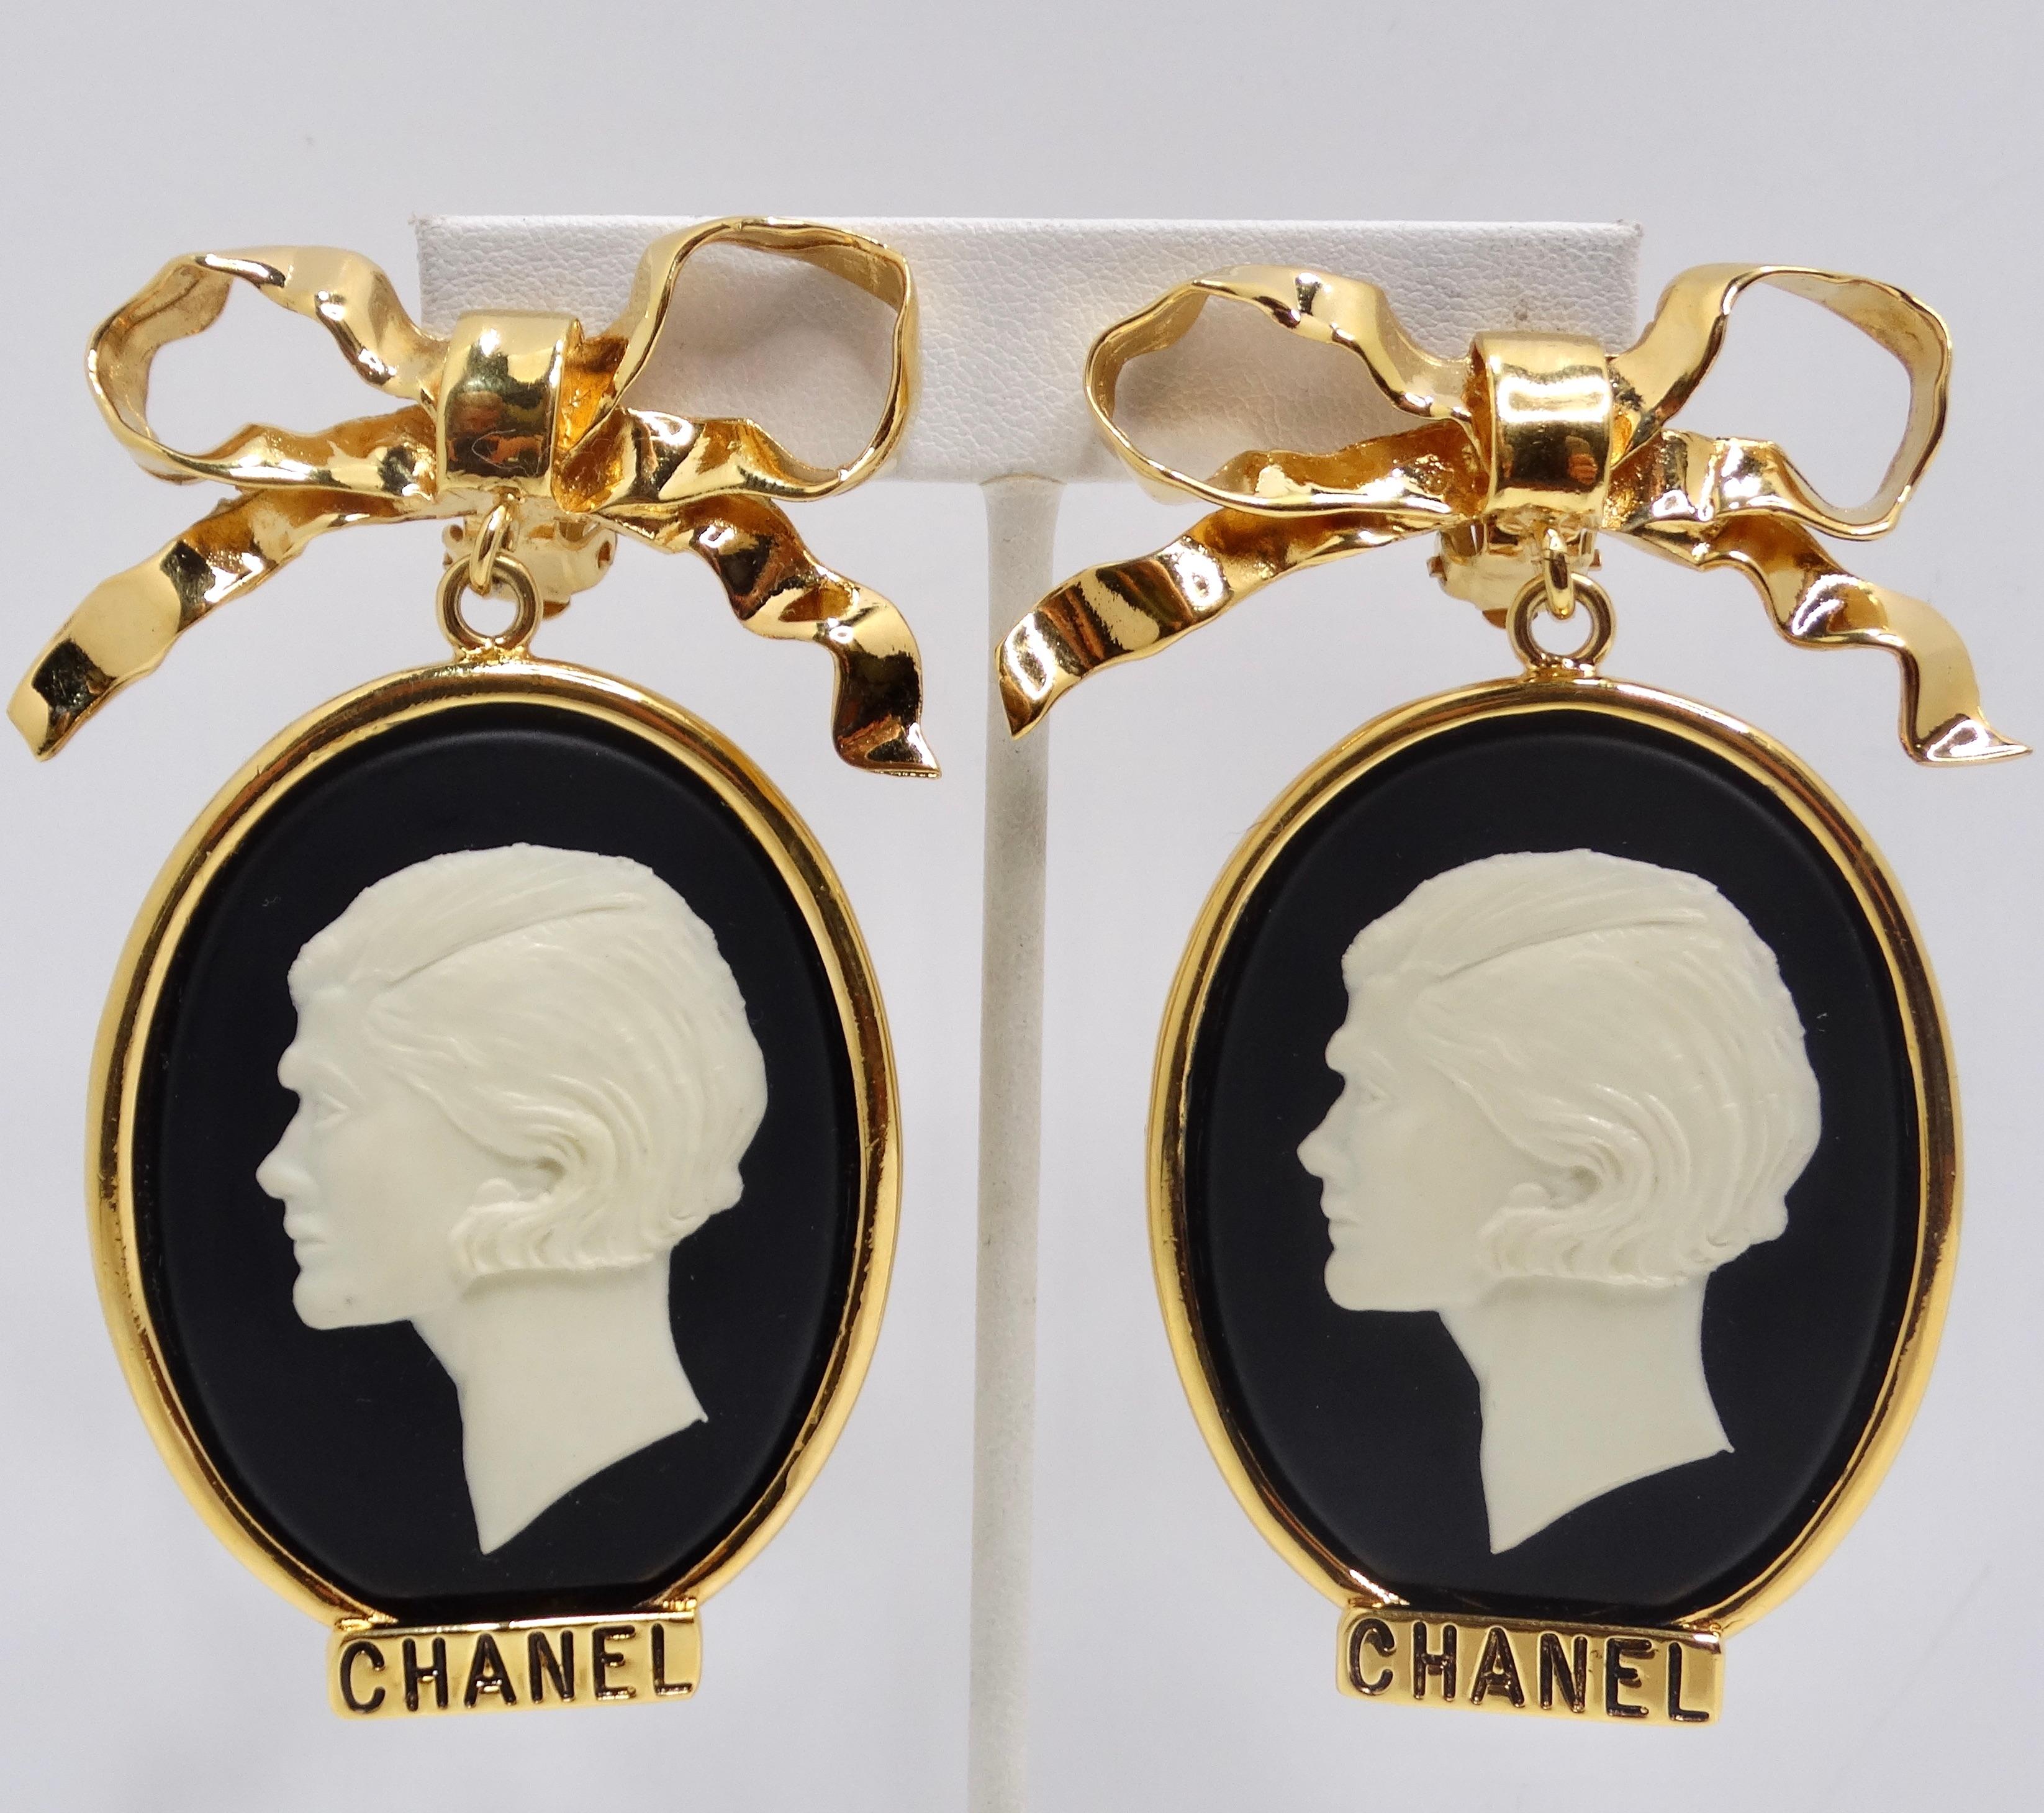 Voici un véritable trésor pour les amateurs de Chanel - les boucles d'oreilles en camée des années 1980, d'une grande taille et d'une couleur or. Ces superbes boucles d'oreilles ne sont pas seulement des accessoires, elles sont aussi un hommage à